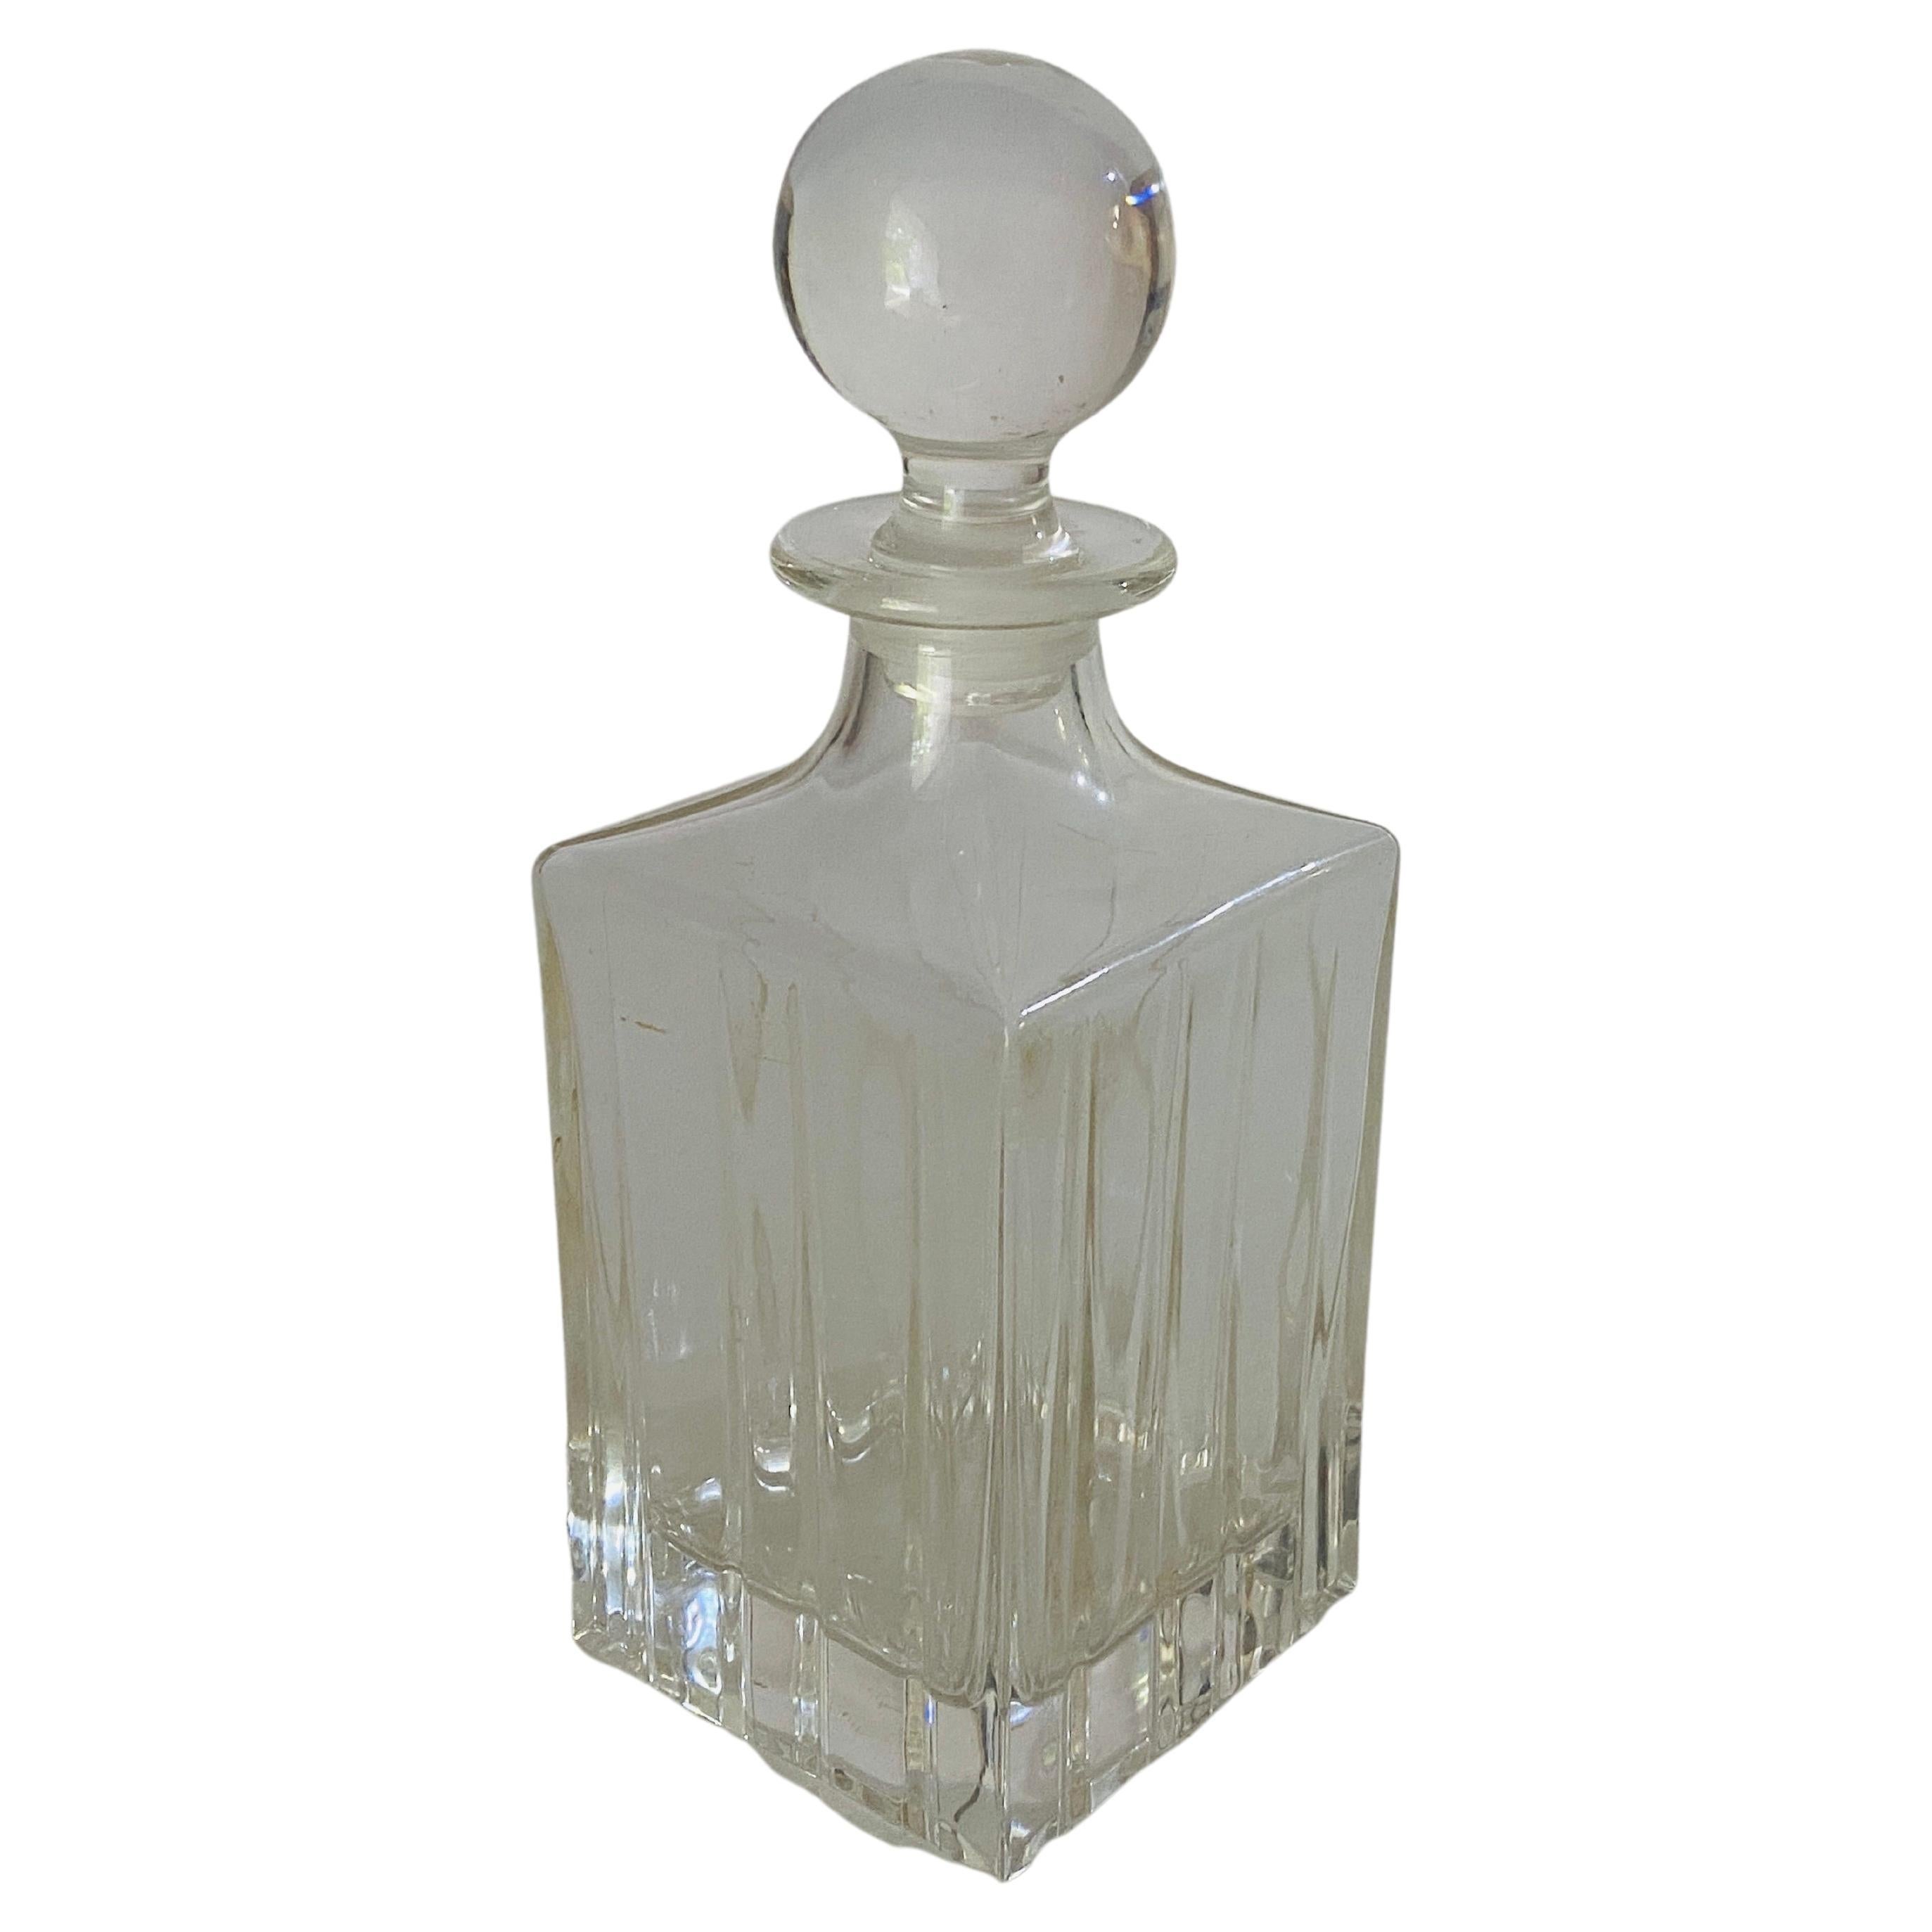 Carafe à whisky carrée en cristal de style Baccarat. Il a été fabriqué en France au cours du 20e siècle.
Couleur transparente